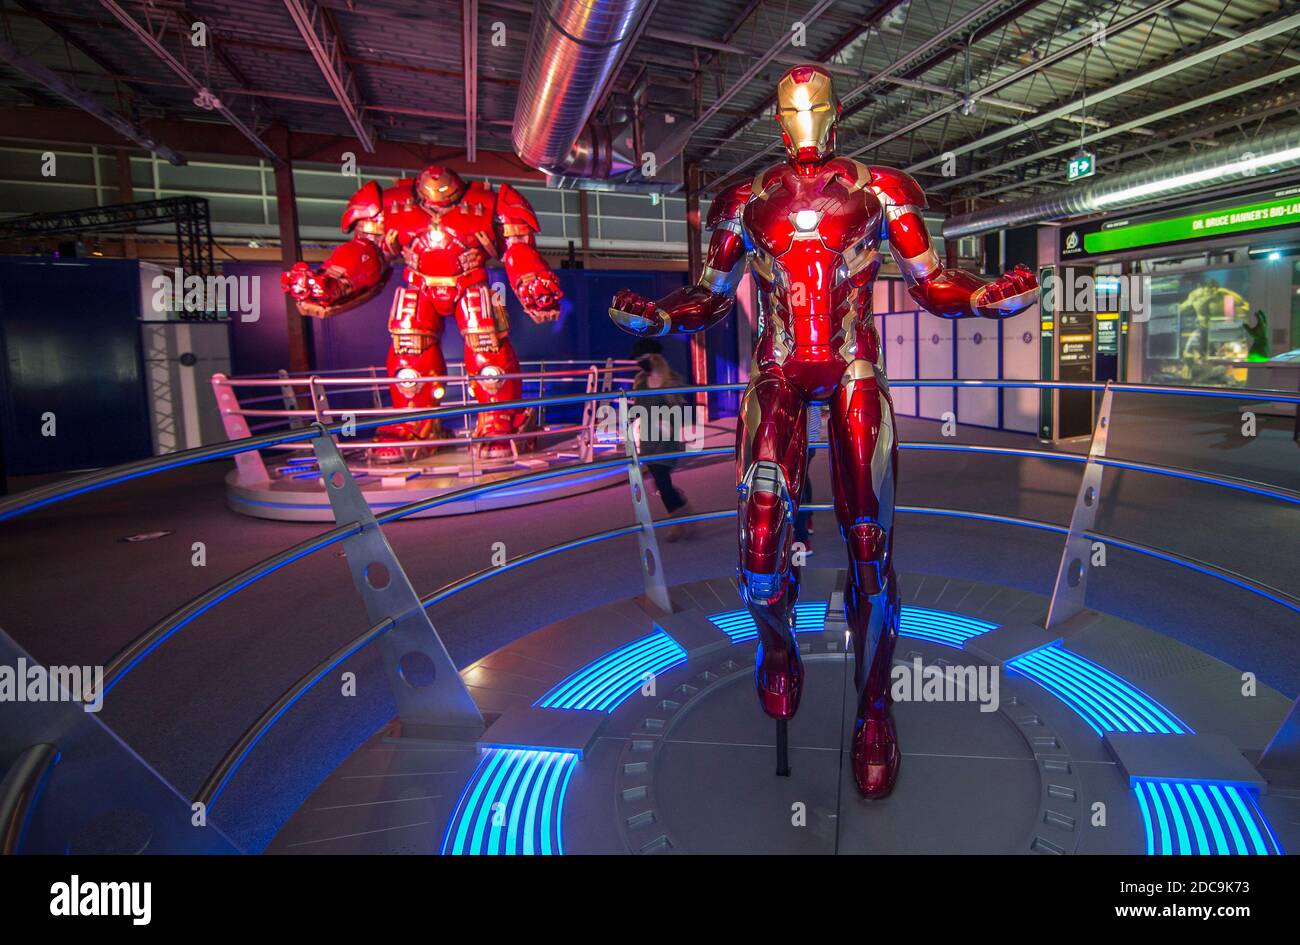 Toronto, le 20 novembre. 31 janvier 2021. Une combinaison Iron Man (avant) est vue à l'exposition Marvel Avengers S.T.A.T.I.O.N. pendant la prévisualisation médiatique au centre commercial Yorkdale de Toronto, Canada, le 19 novembre 2020. Présentant l'univers cinématographique Marvel des super-héros, l'exposition sera ouverte au public du 20 novembre 2020 au 31 janvier 2021. Credit: Zou Zheng/Xinhua/Alamy Live News Banque D'Images